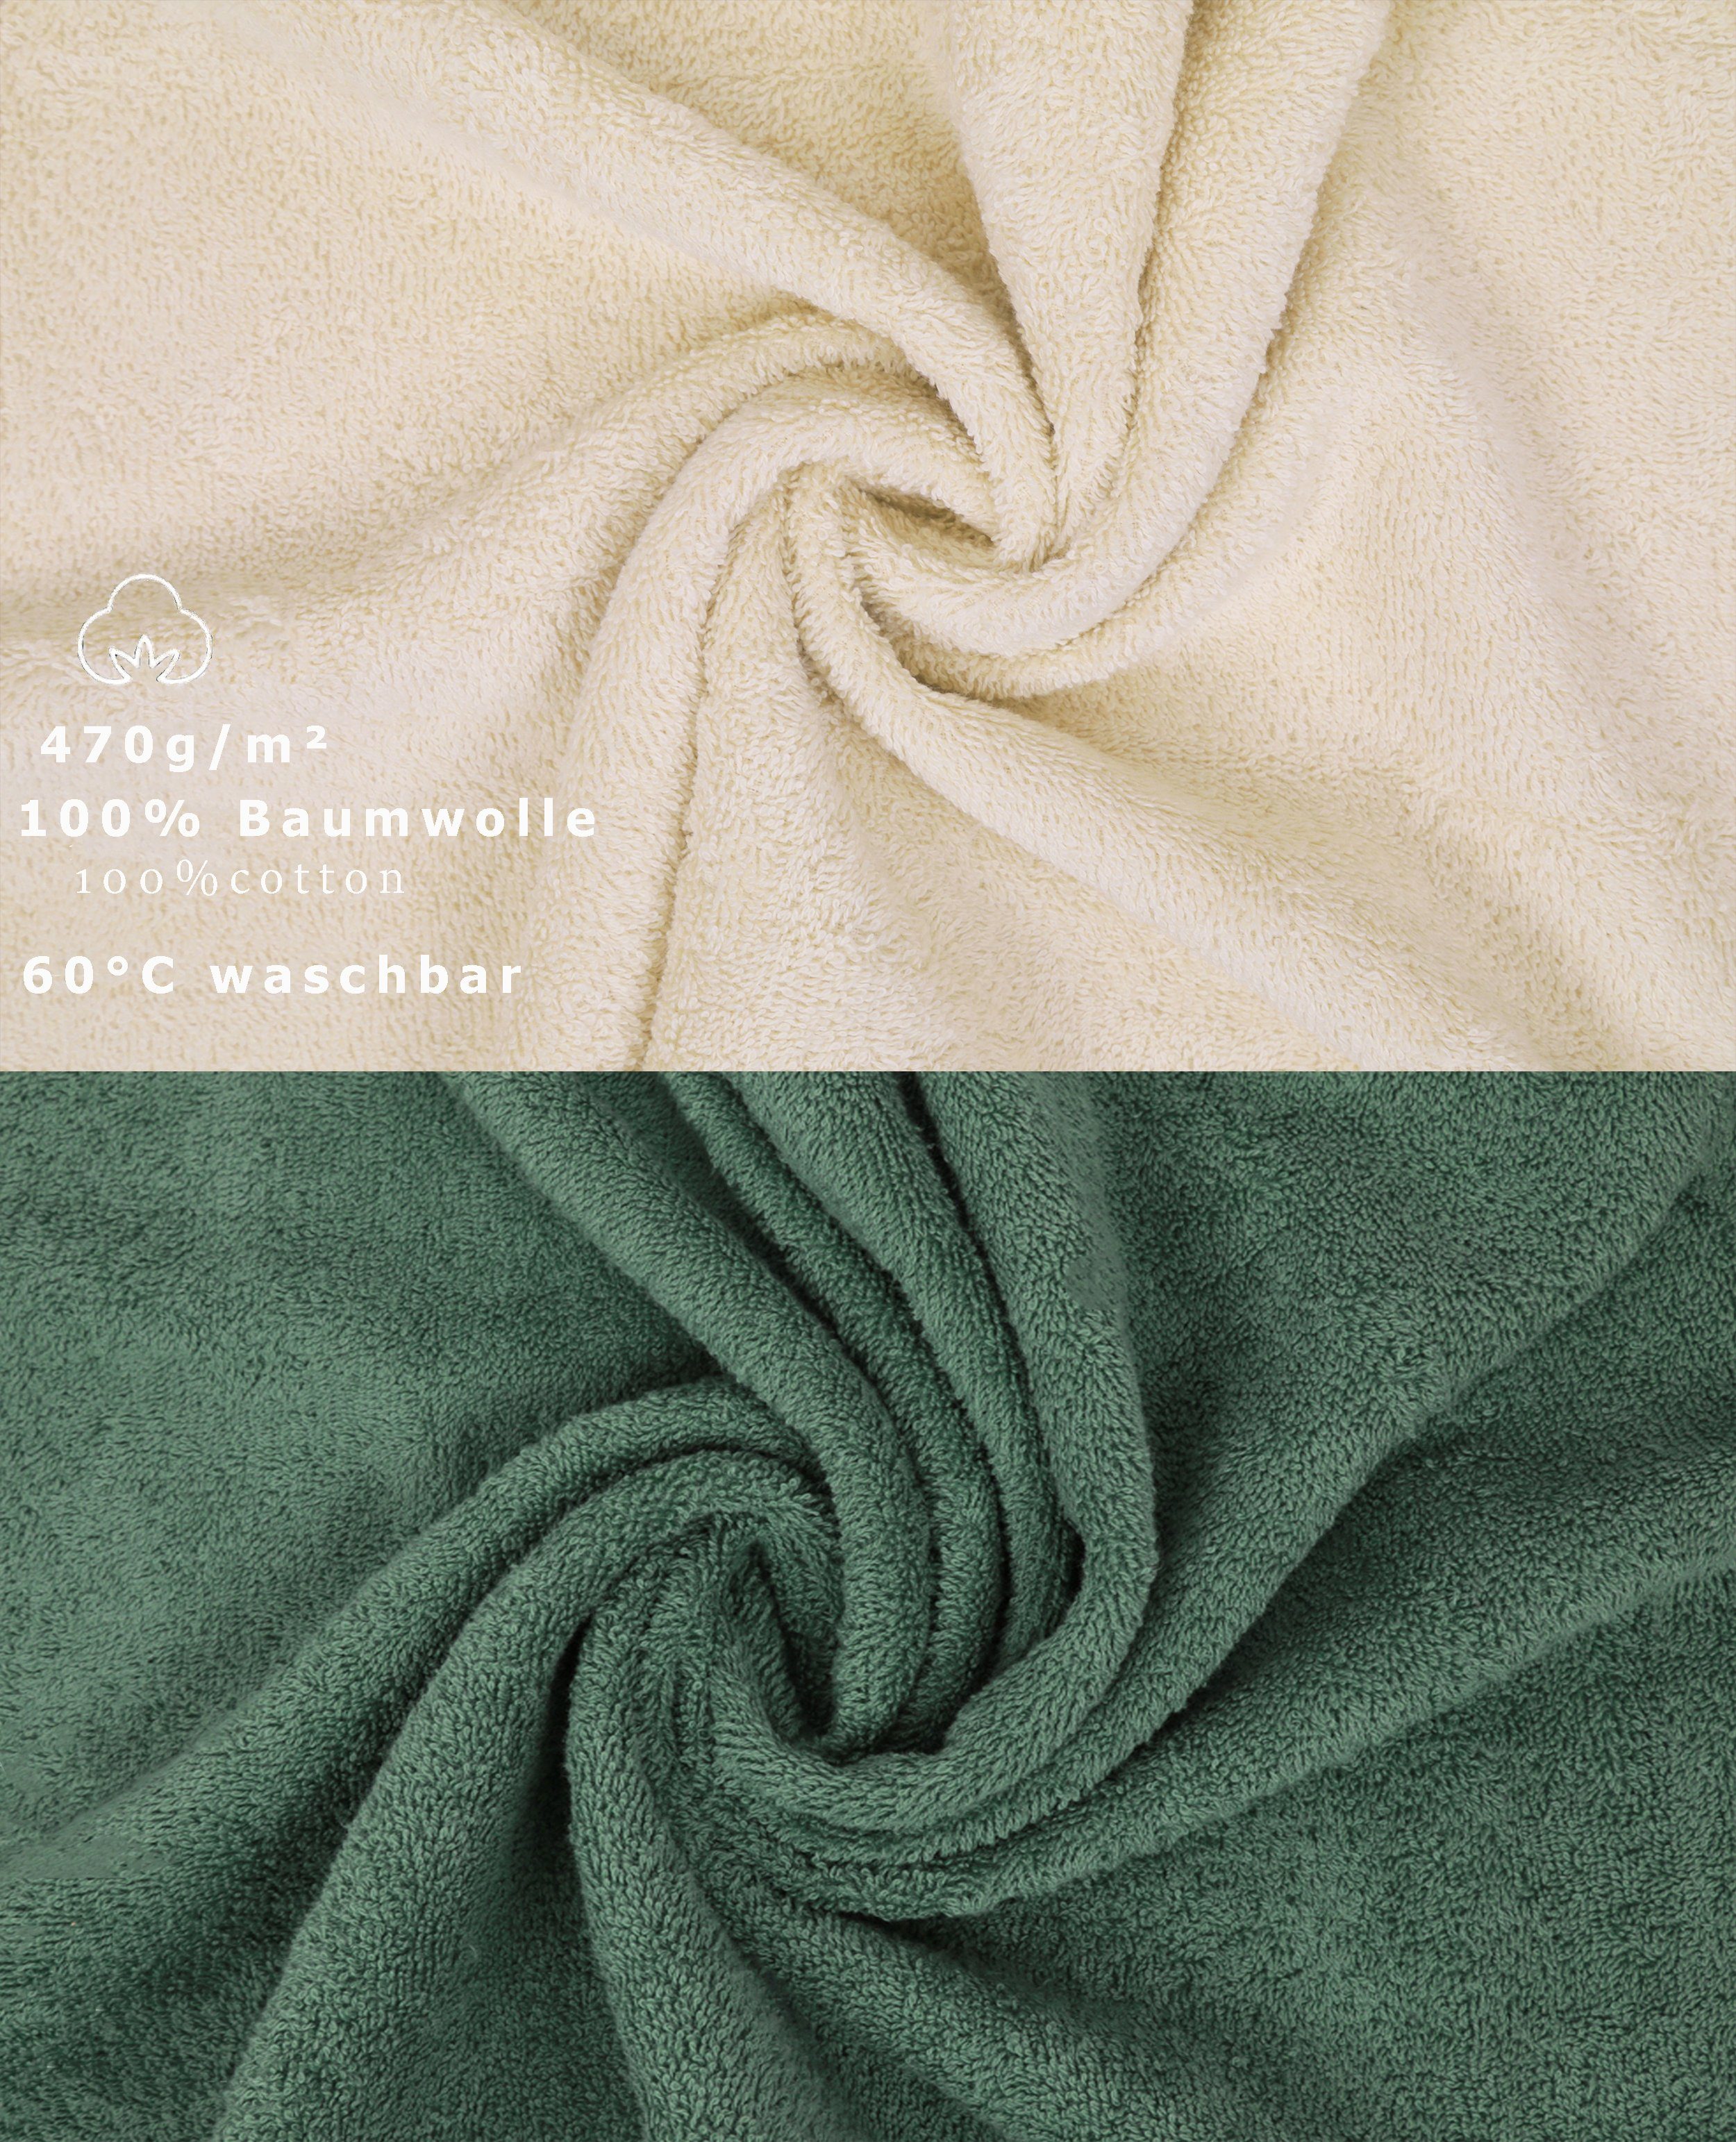 Betz Handtuch Set Farbe (12-tlg) Sand/tannengrün, 12-TLG. Baumwolle, 100% Handtuch Set Premium